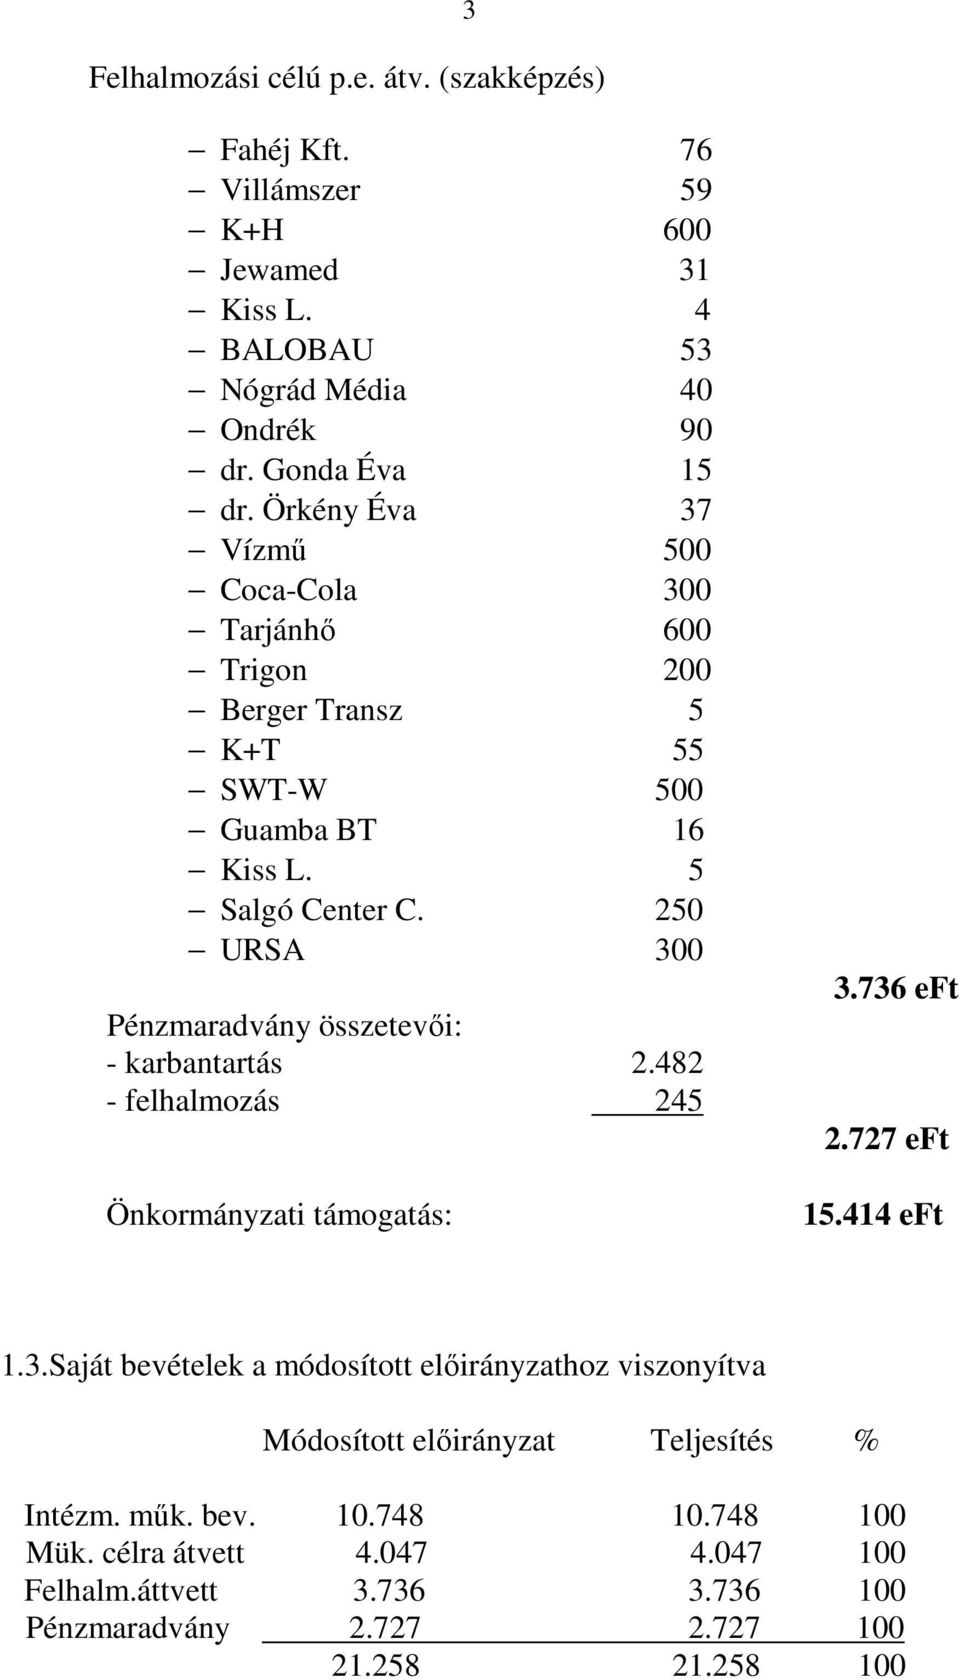 250 URSA 300 Pénzmaradvány összetevıi: - karbantartás 2.482 - felhalmozás 245 Önkormányzati támogatás: 3.736 eft 2.727 eft 15.414 eft 1.3.Saját bevételek a módosított elıirányzathoz viszonyítva Módosított elıirányzat Teljesítés % Intézm.